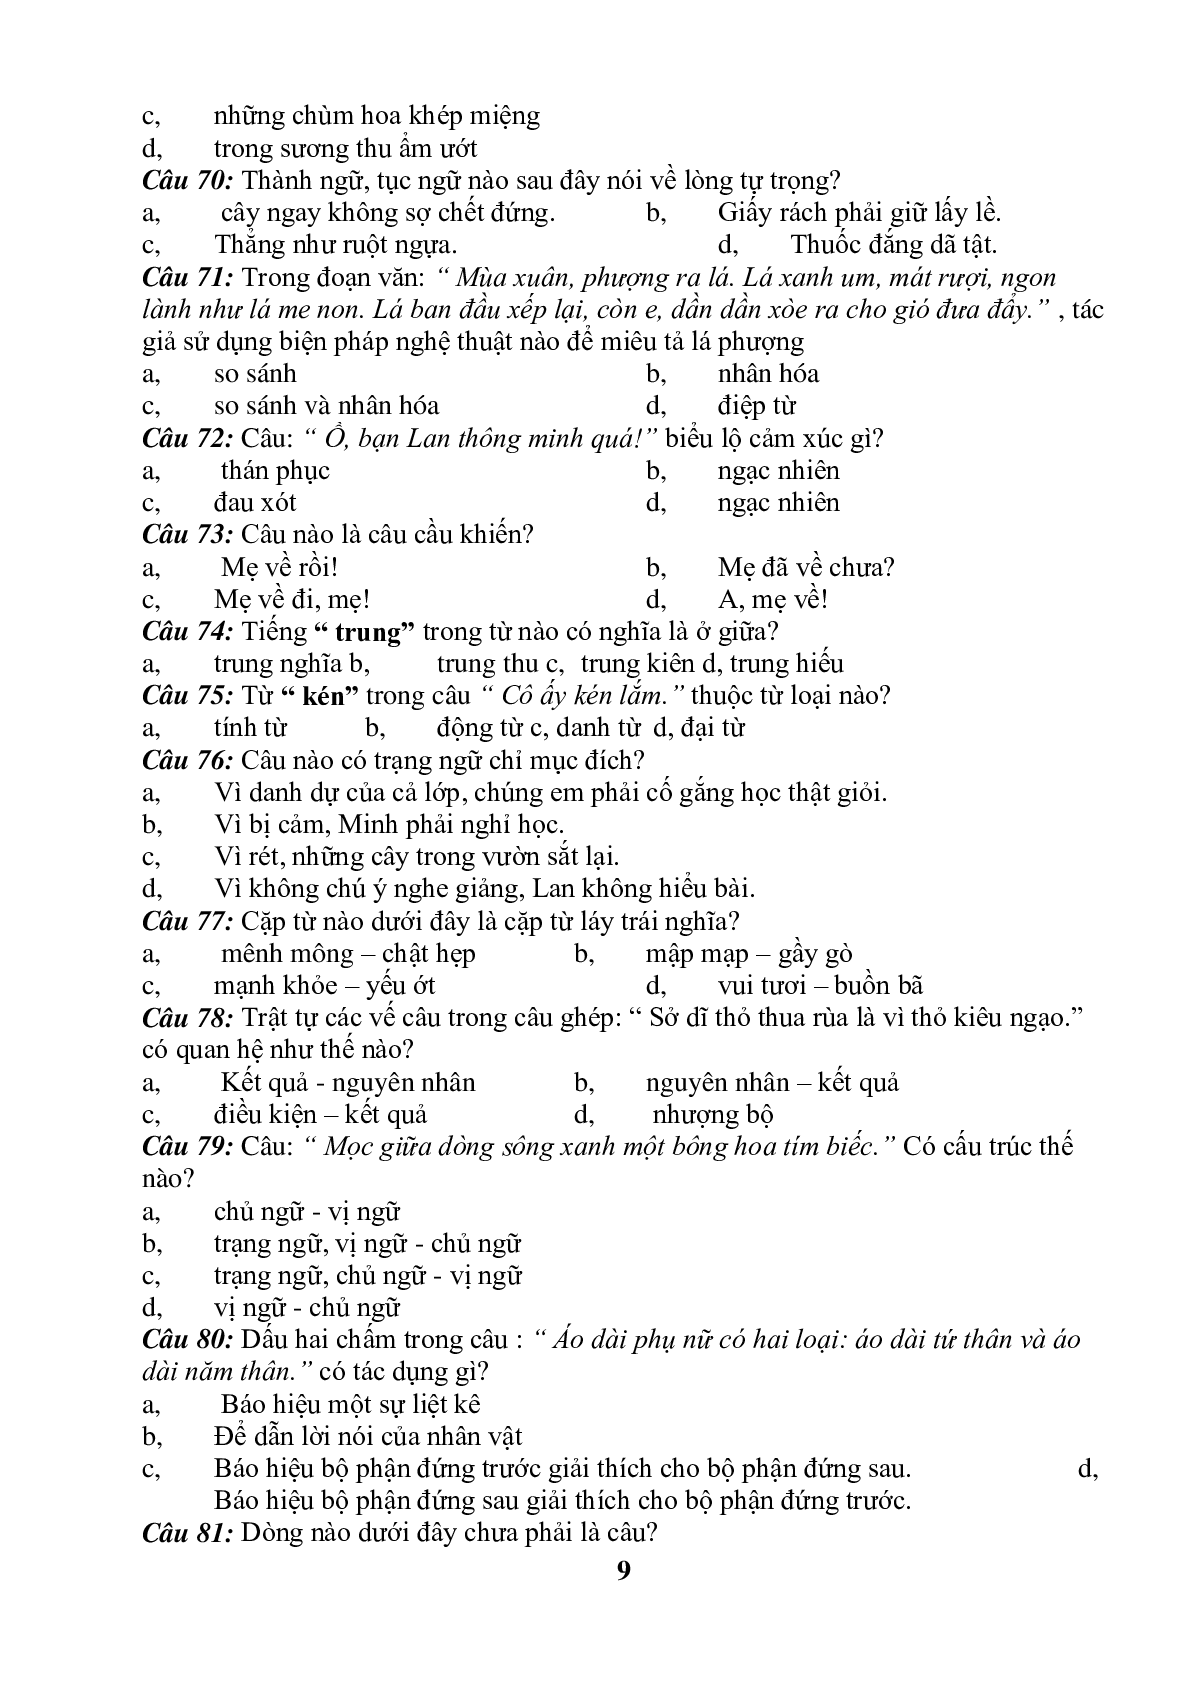 99 câu trắc nghiệm bồi dưỡng HSG môn Tiếng Việt lớp 5 (trang 9)